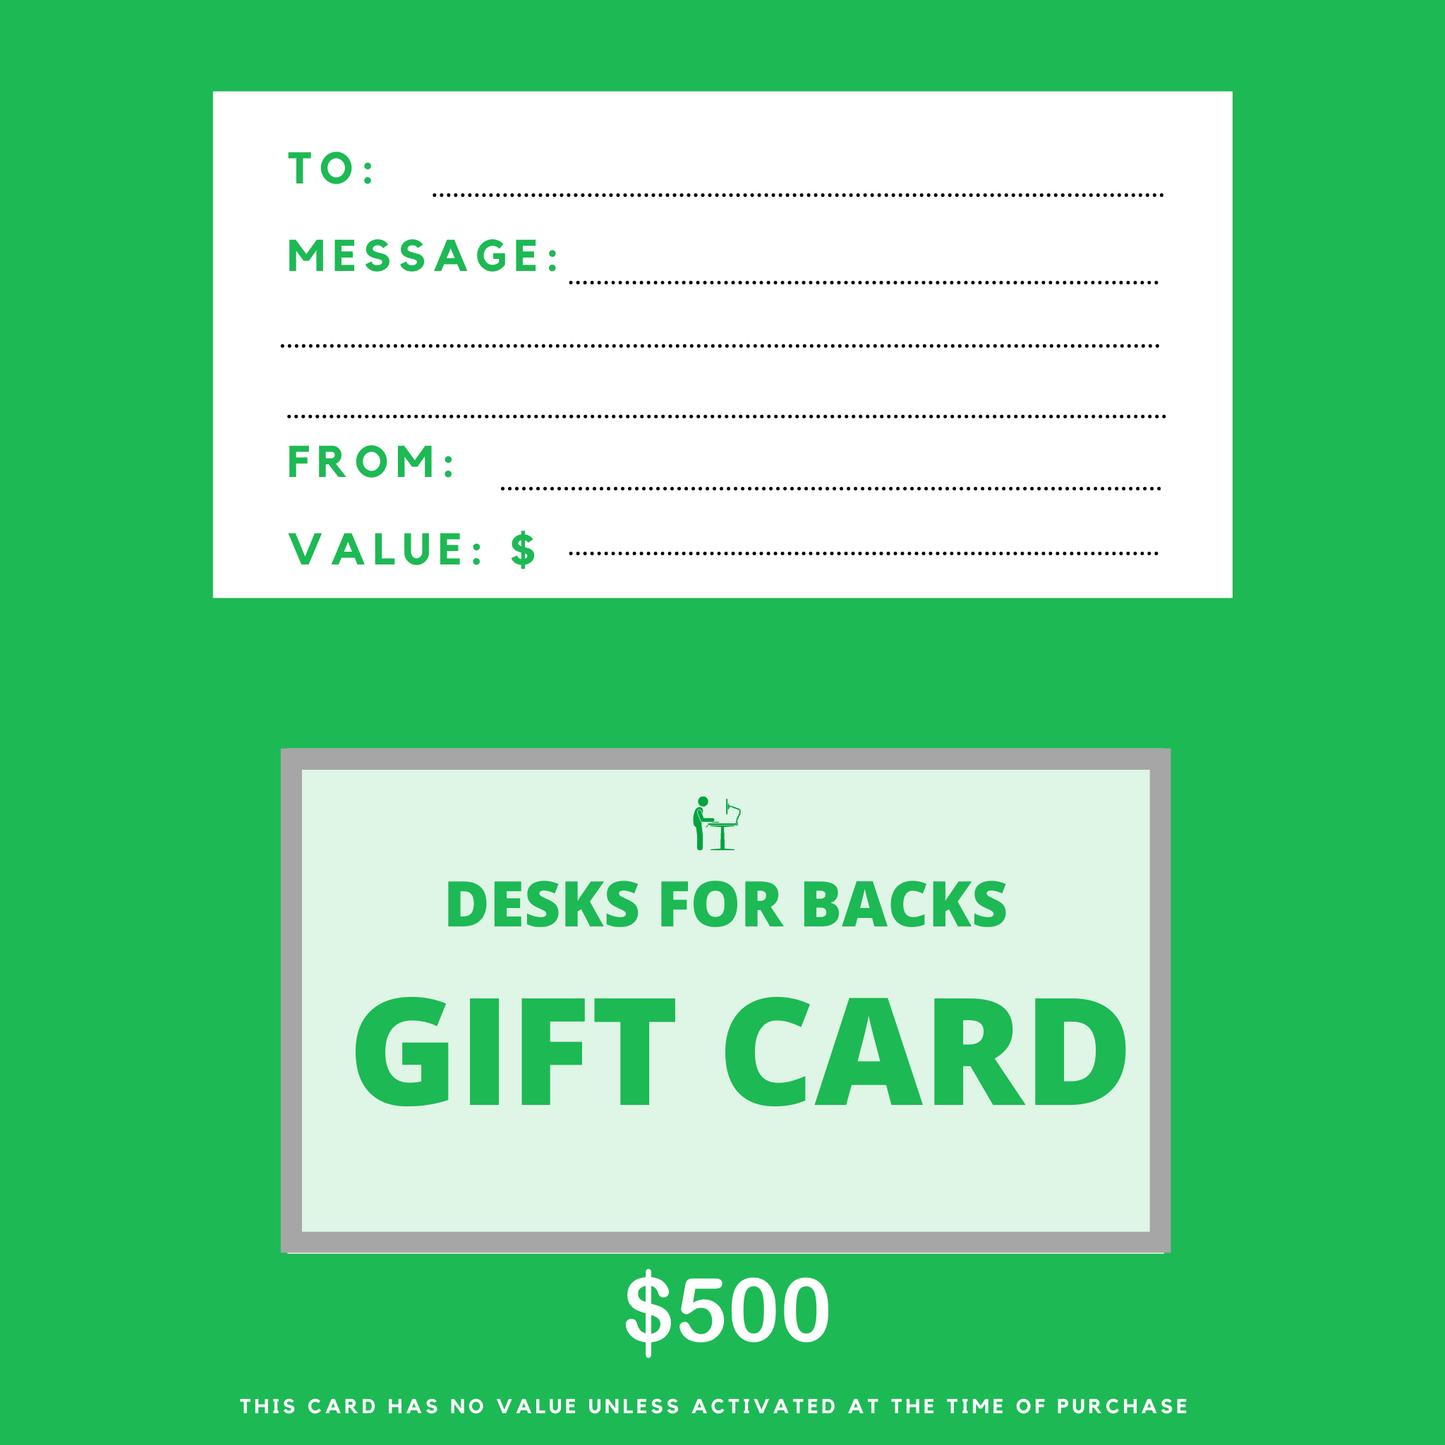 Desks for backs gift card $500